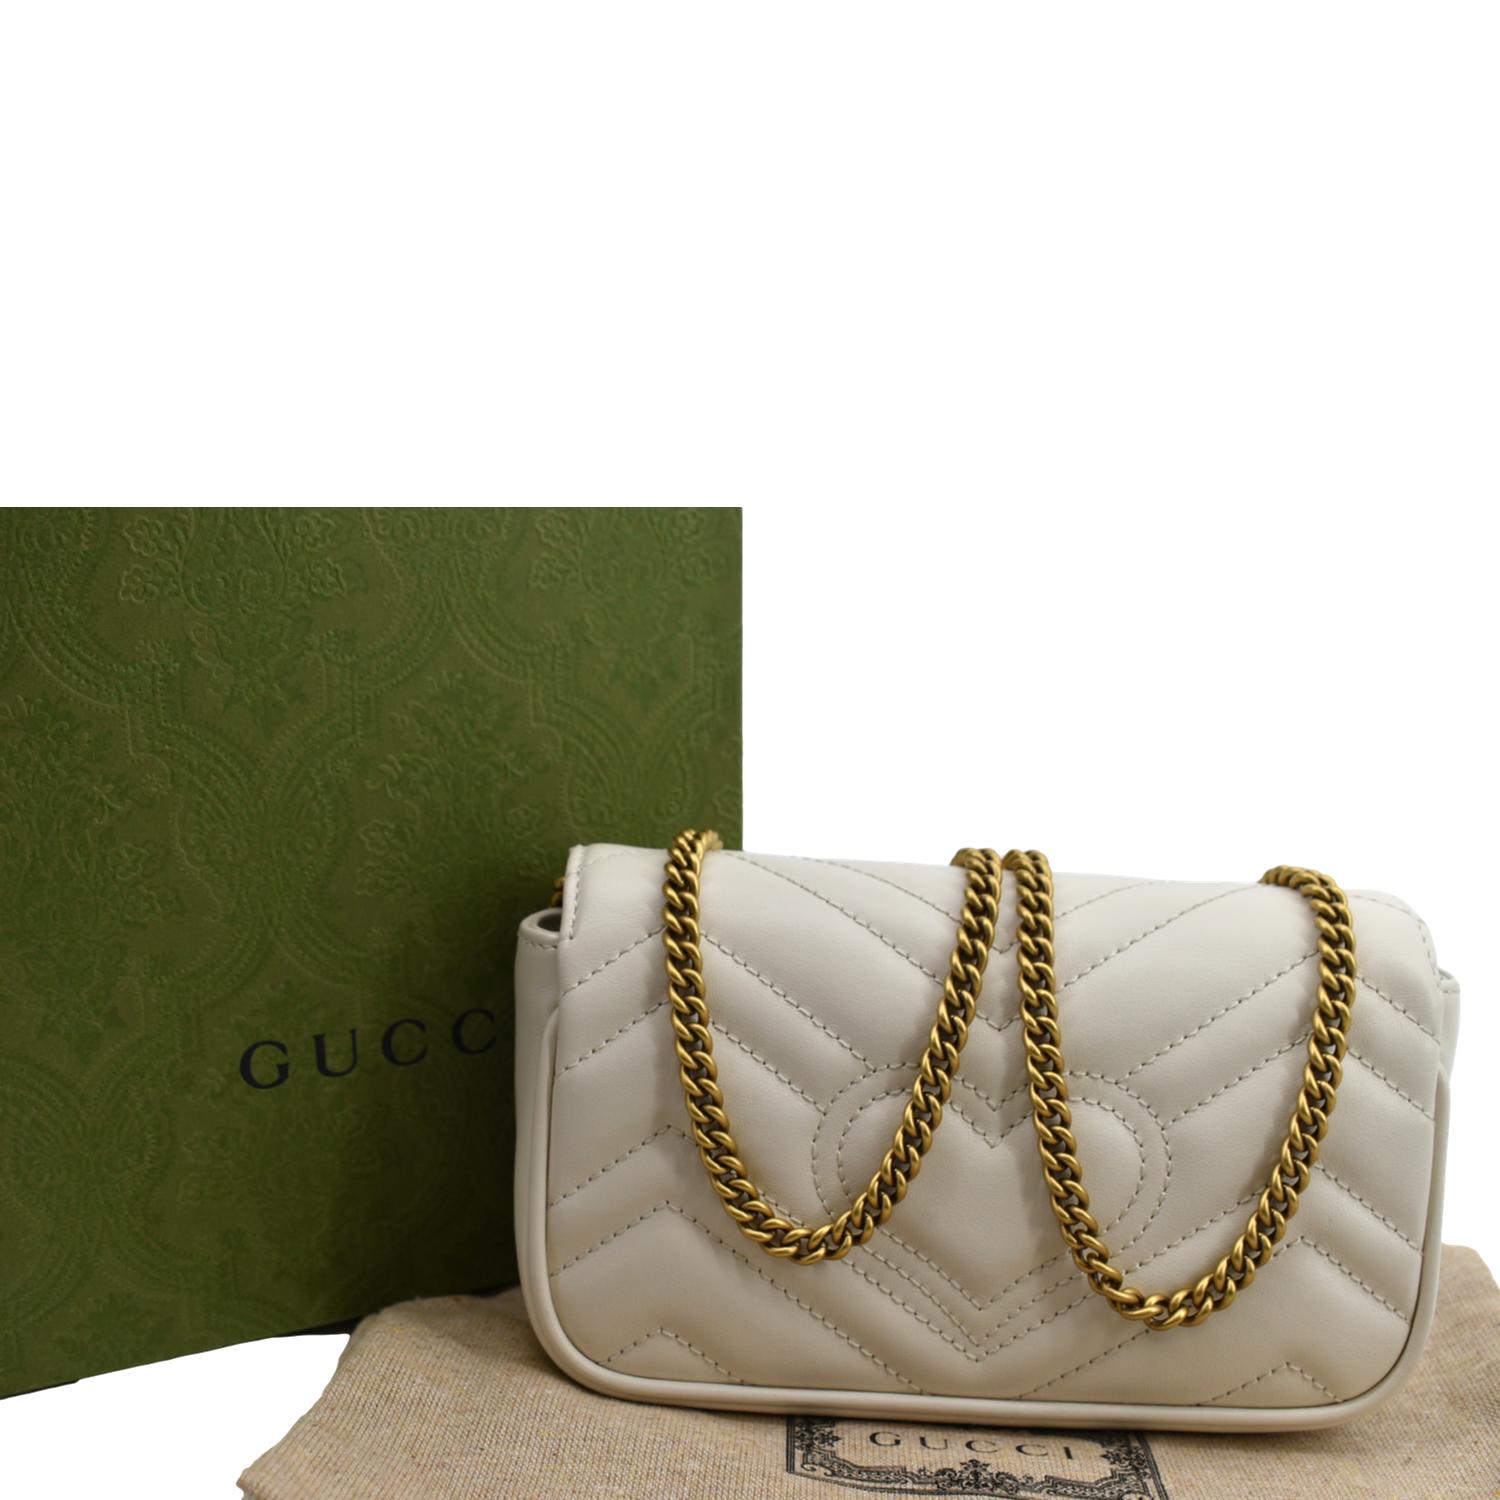 Gucci Women's GG Marmont Super Mini Bag